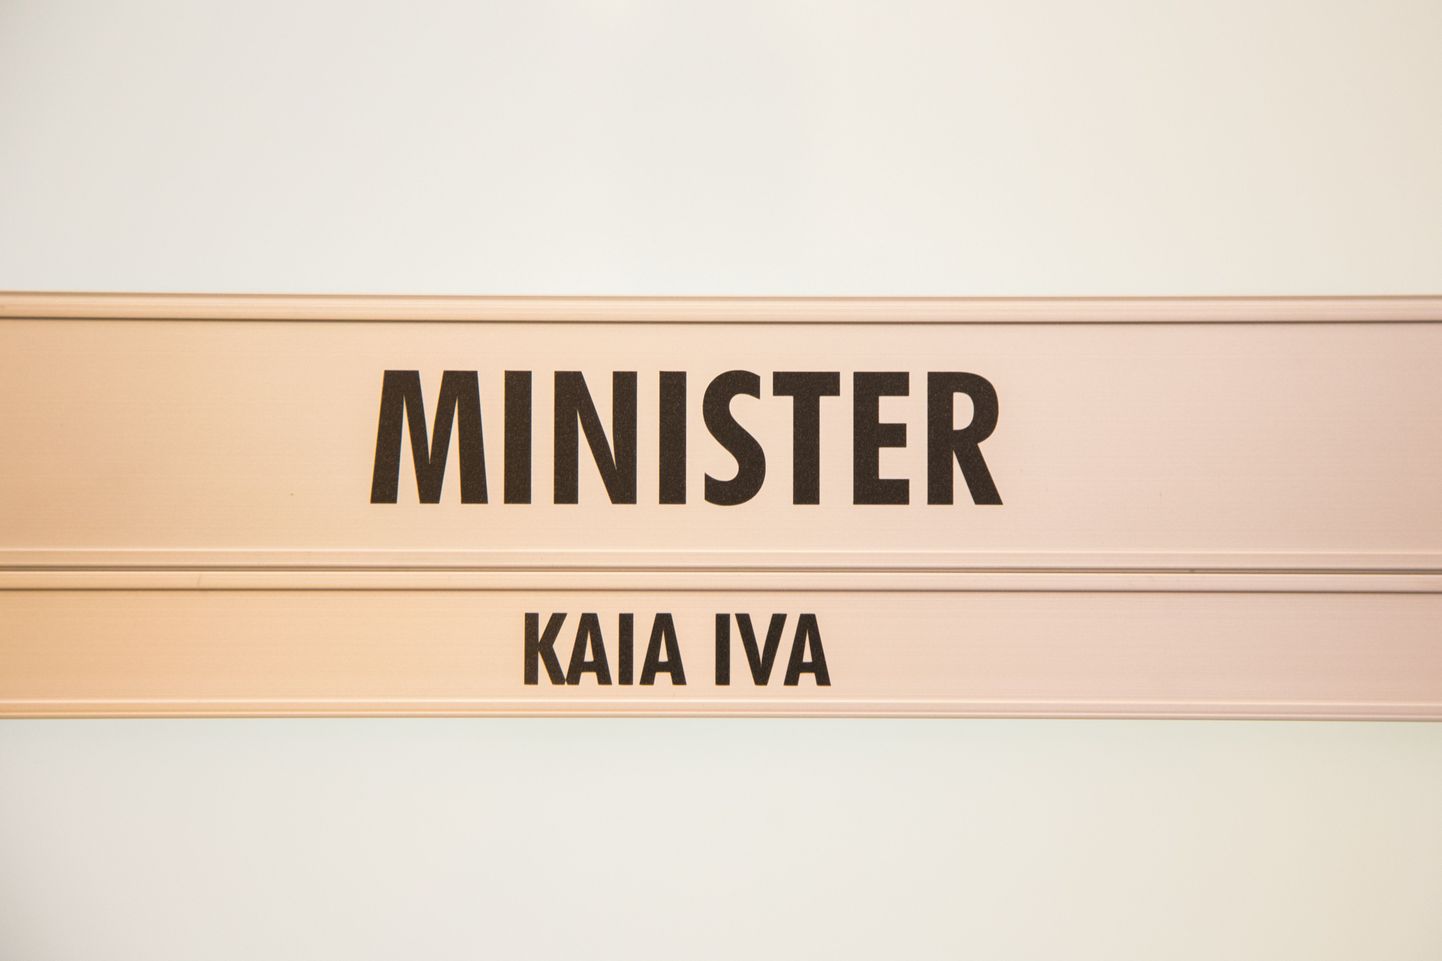 Kaia Iva kabinet